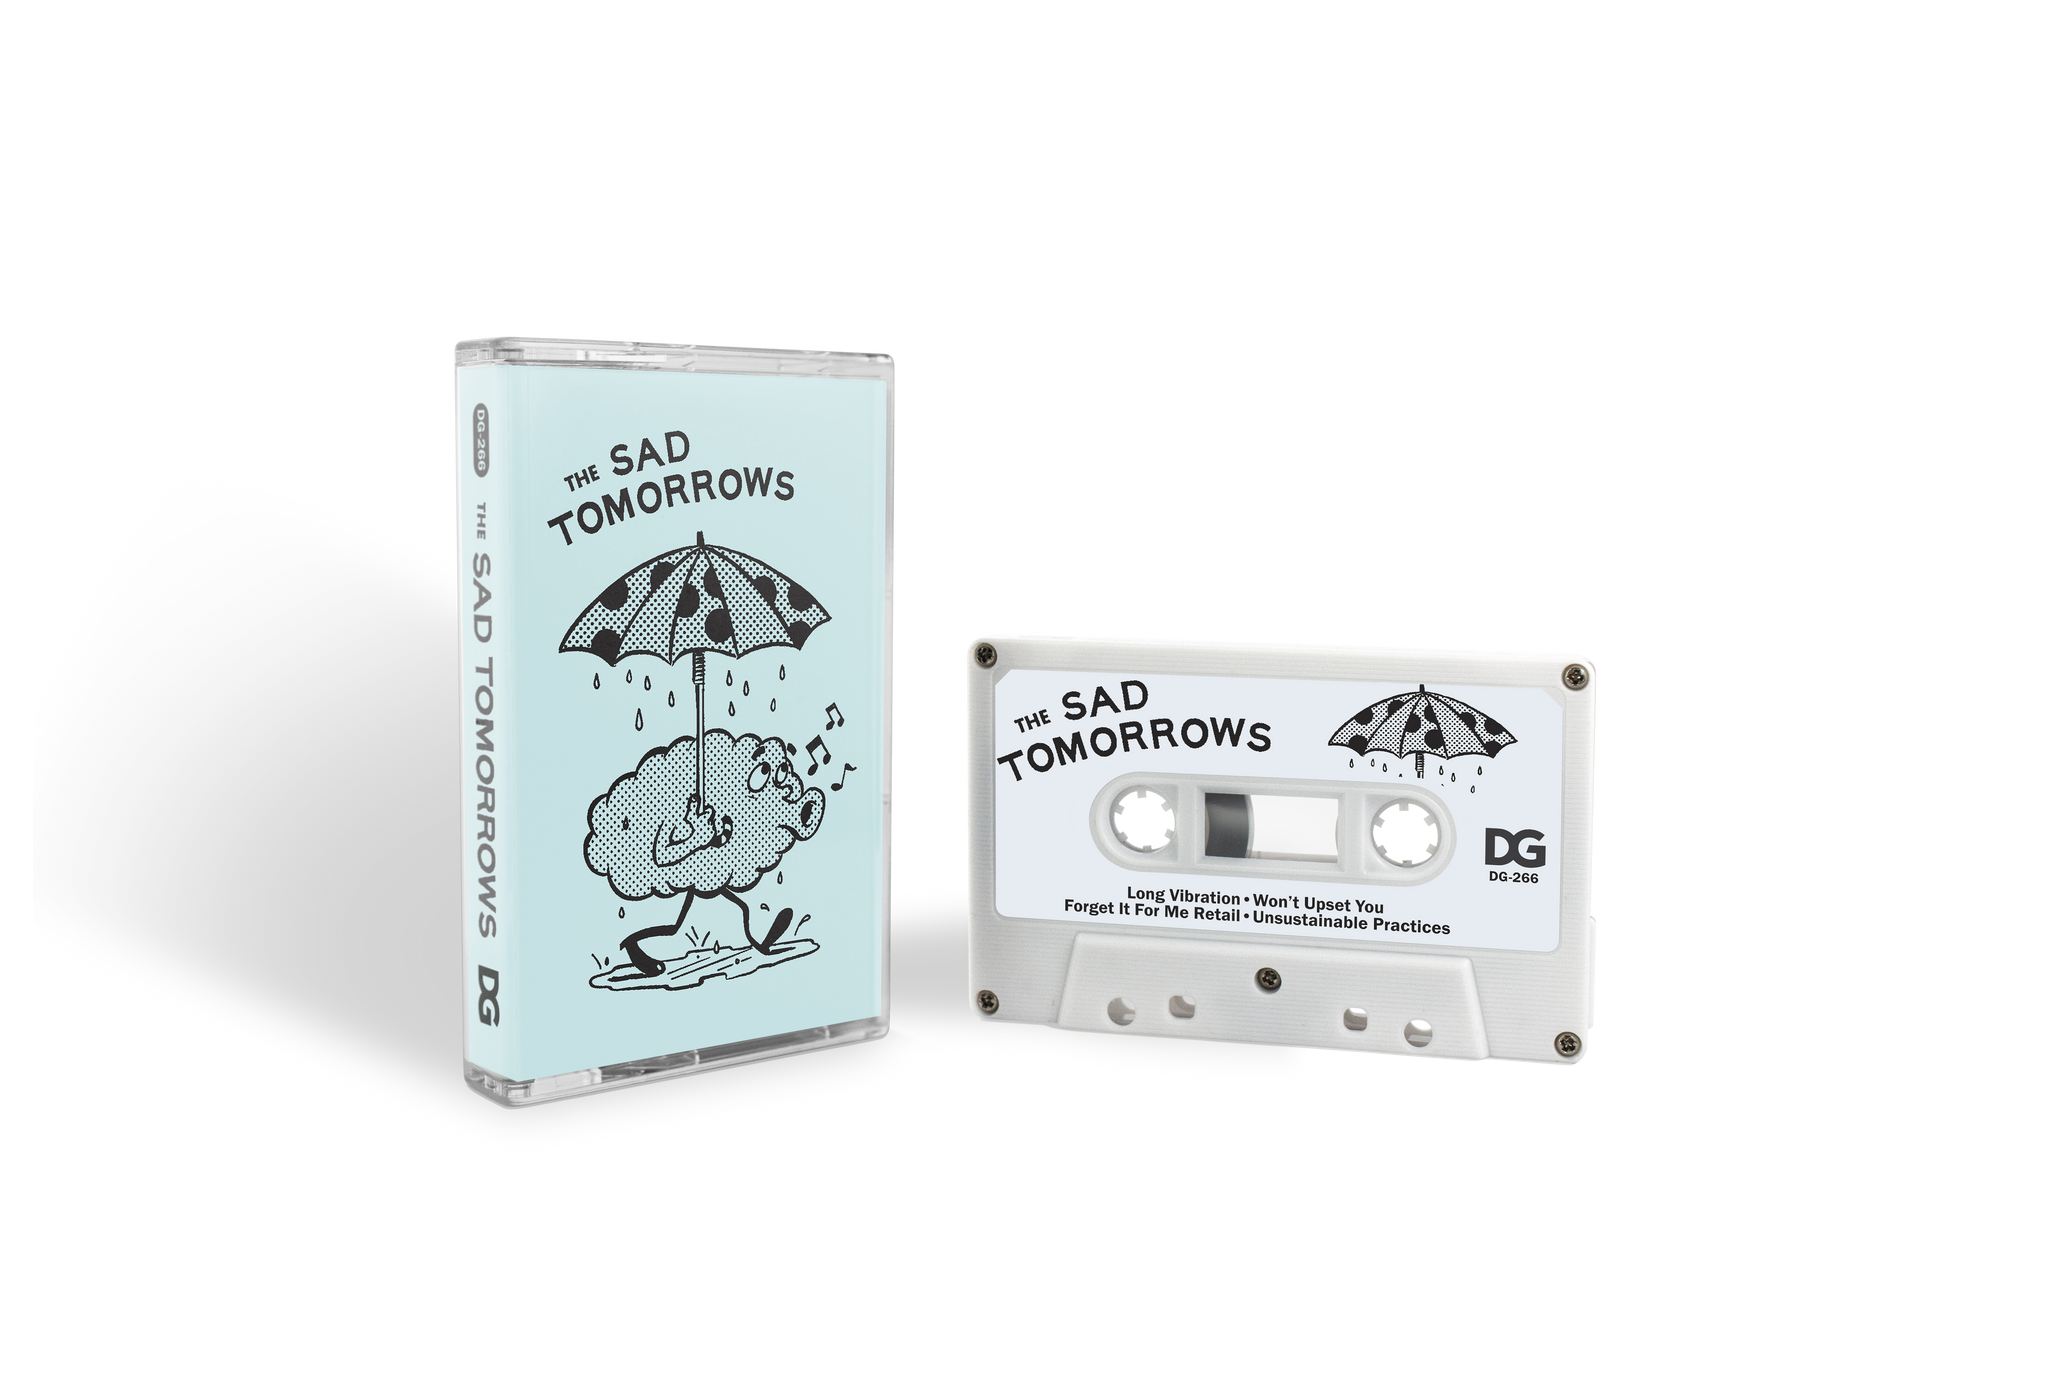 The Sad Tomorrows "The Sad Tomorrows" Cassette